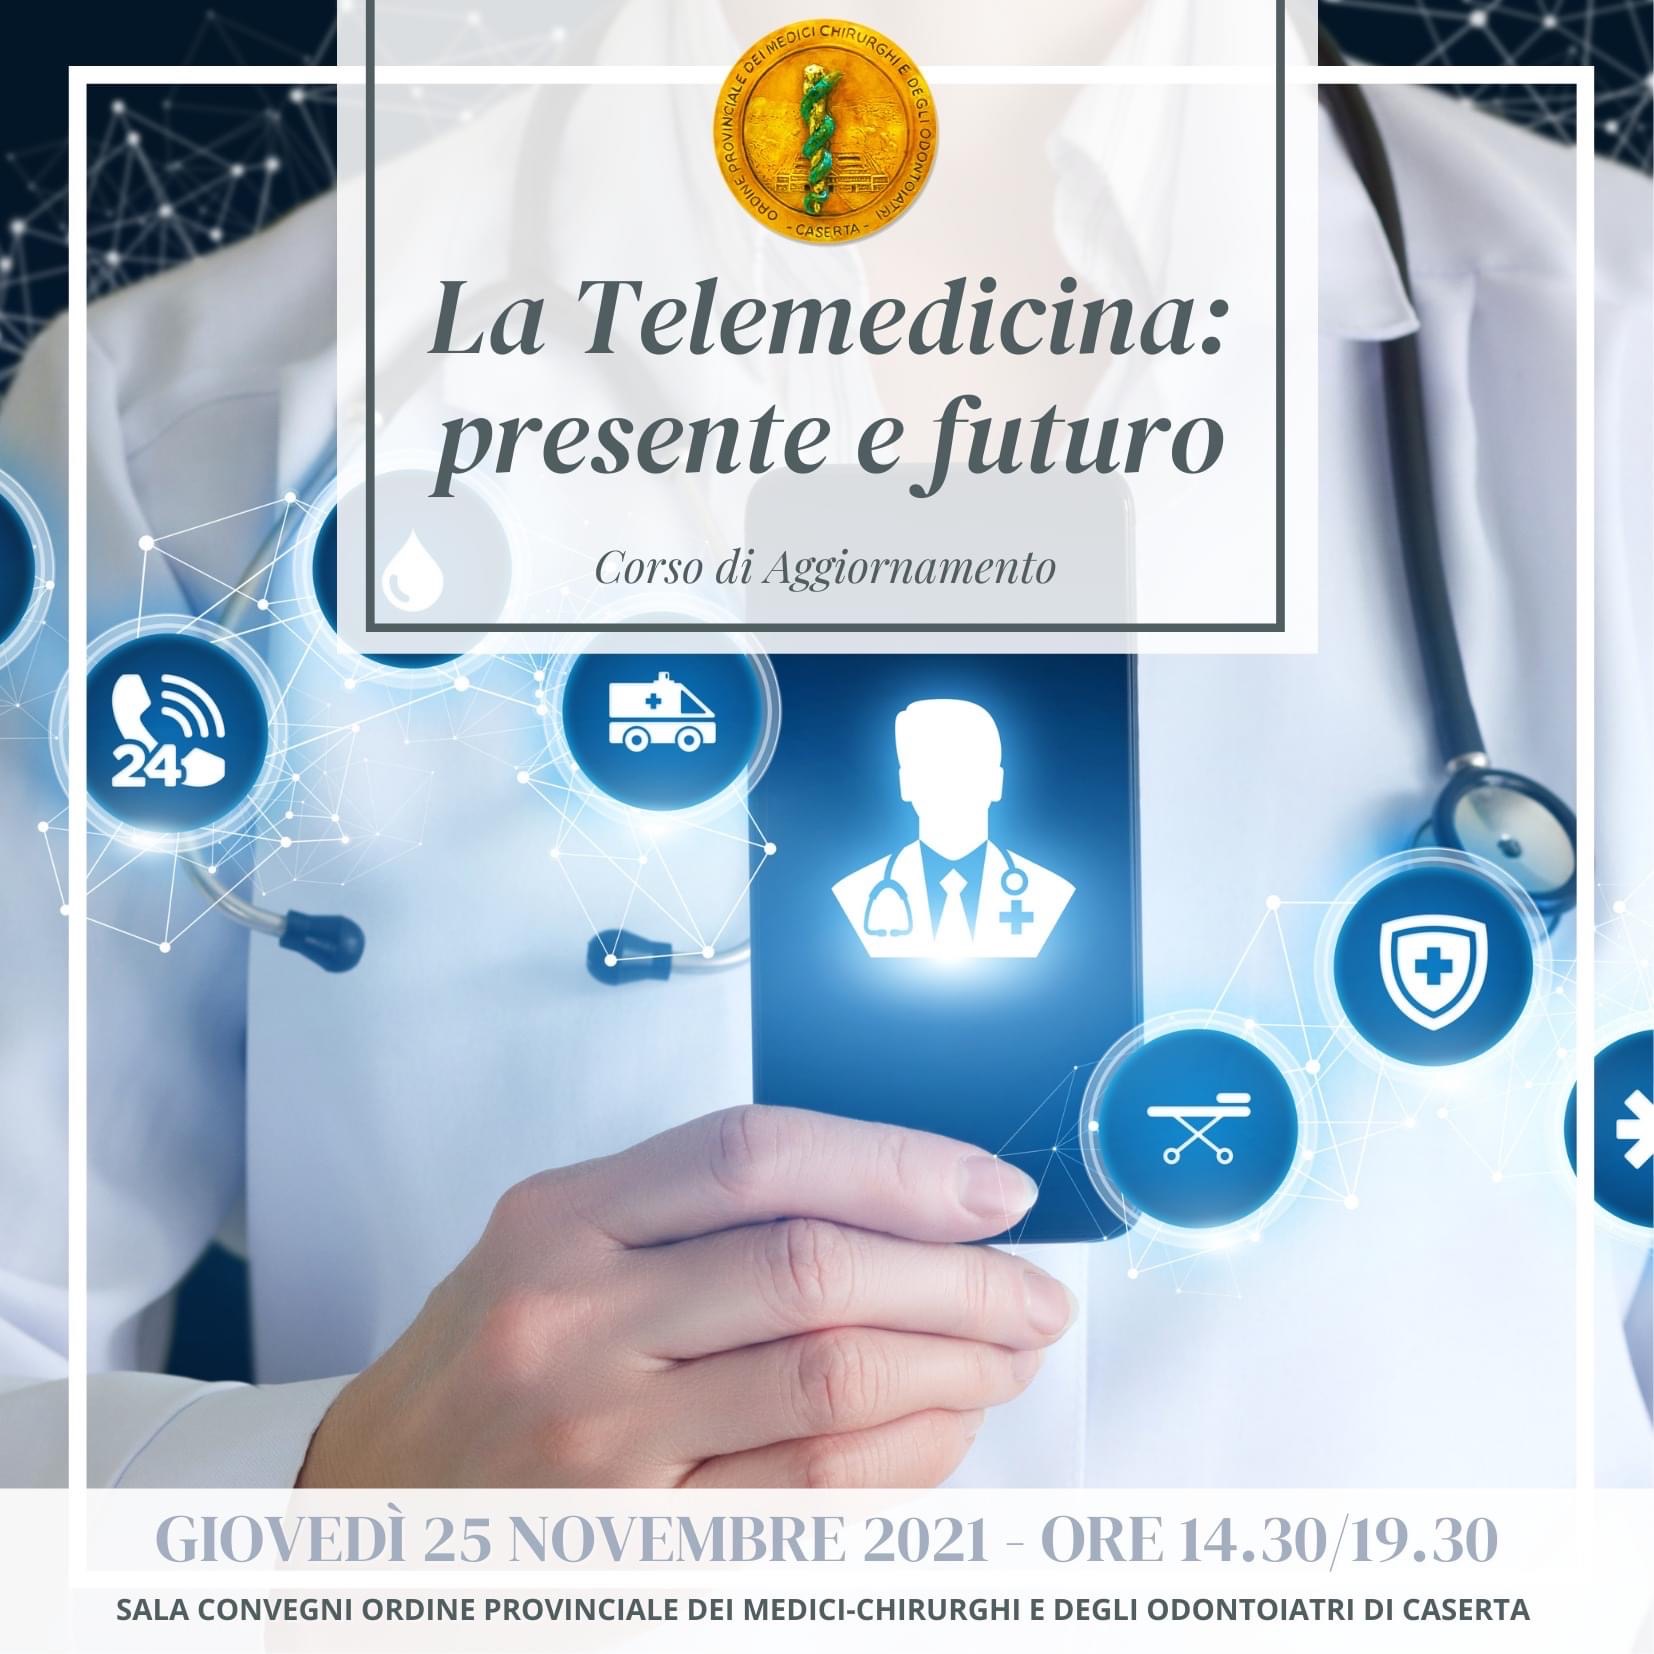 telemedicina  “LA TELEMEDICINA: PRESENTE E FUTURO”, CORSO DI AGGIORNAMENTO DELLORDINE PROVINCIALE DEI MEDICI